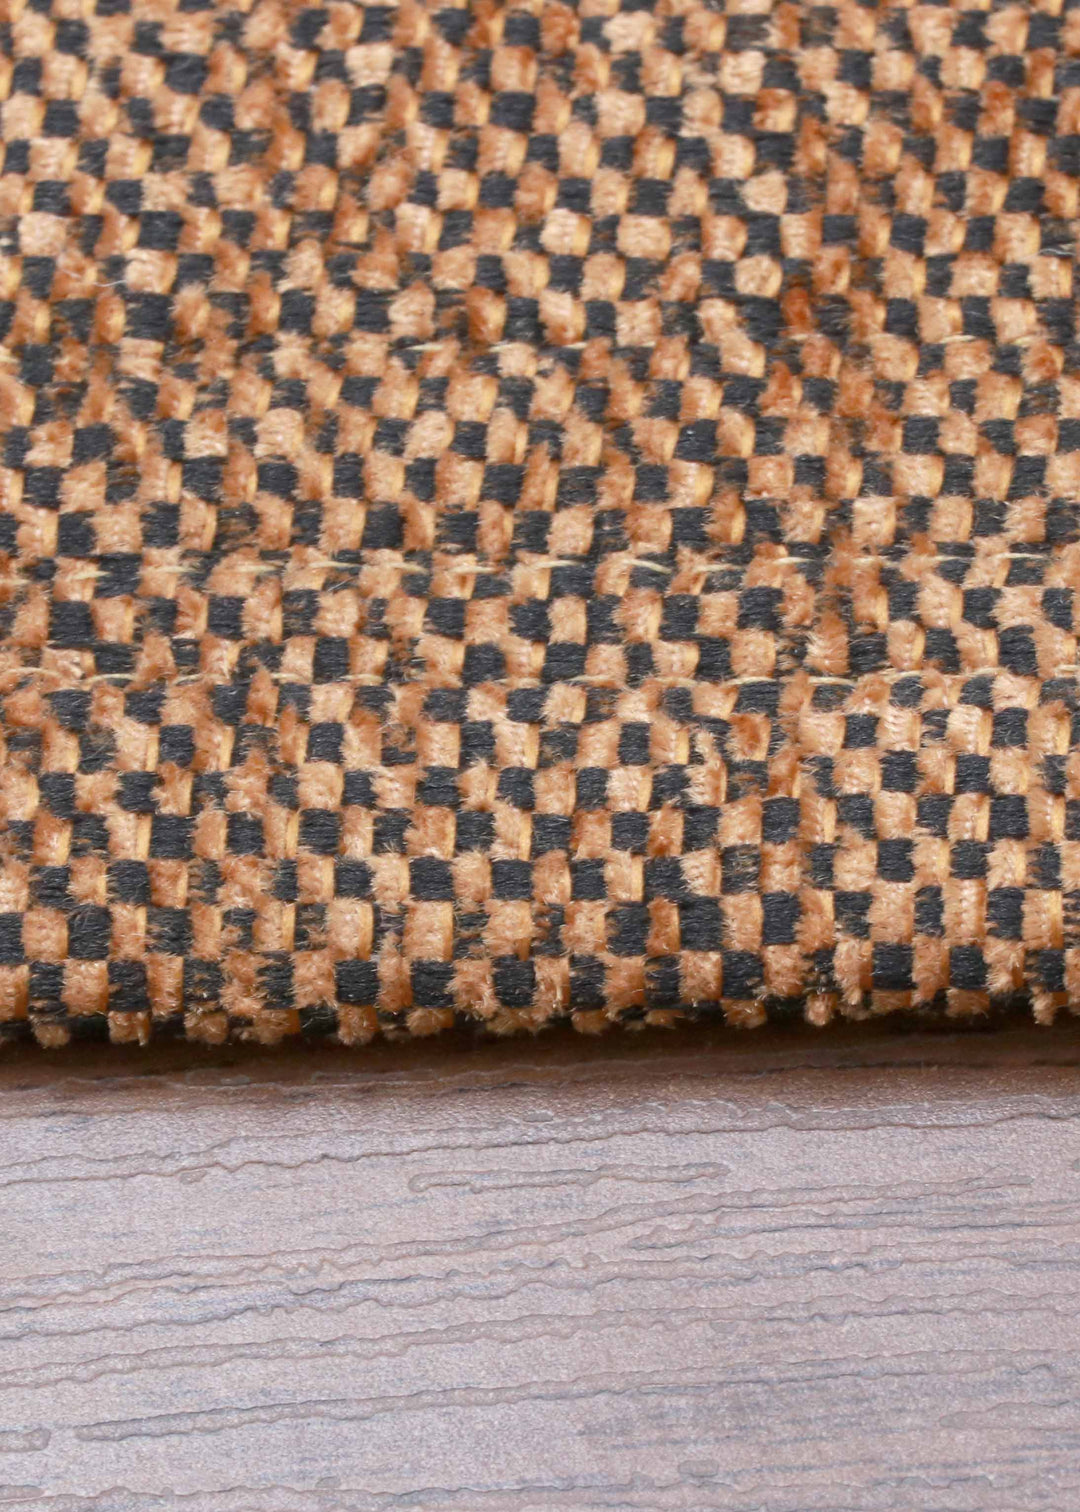 Copper Plain Weave Rug